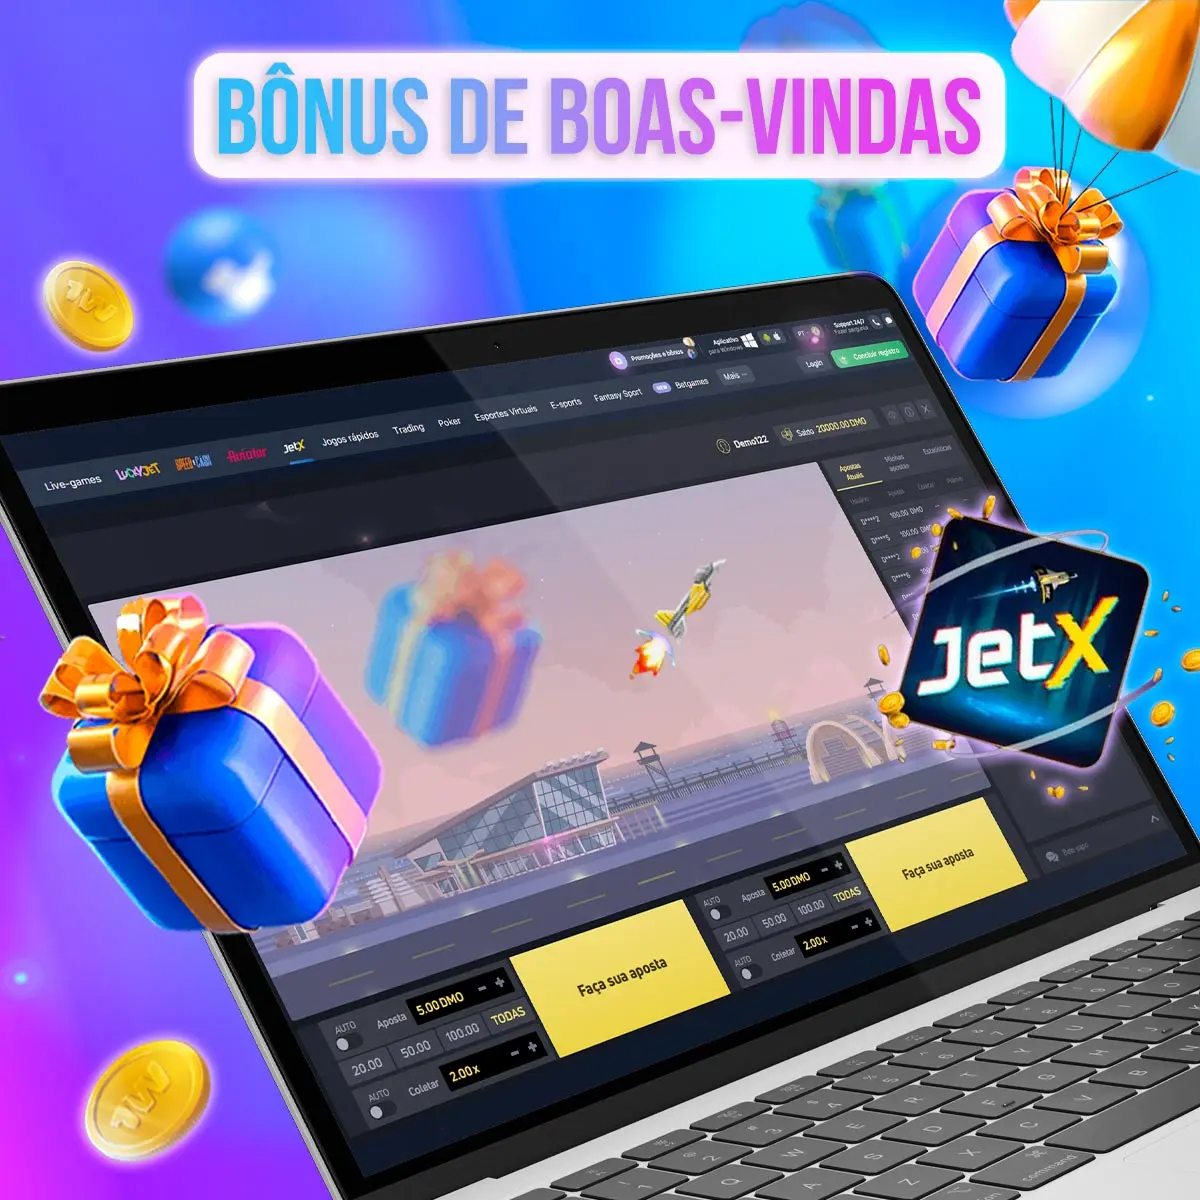 Bônus de Boas-Vindas 1win para jogar no JetX